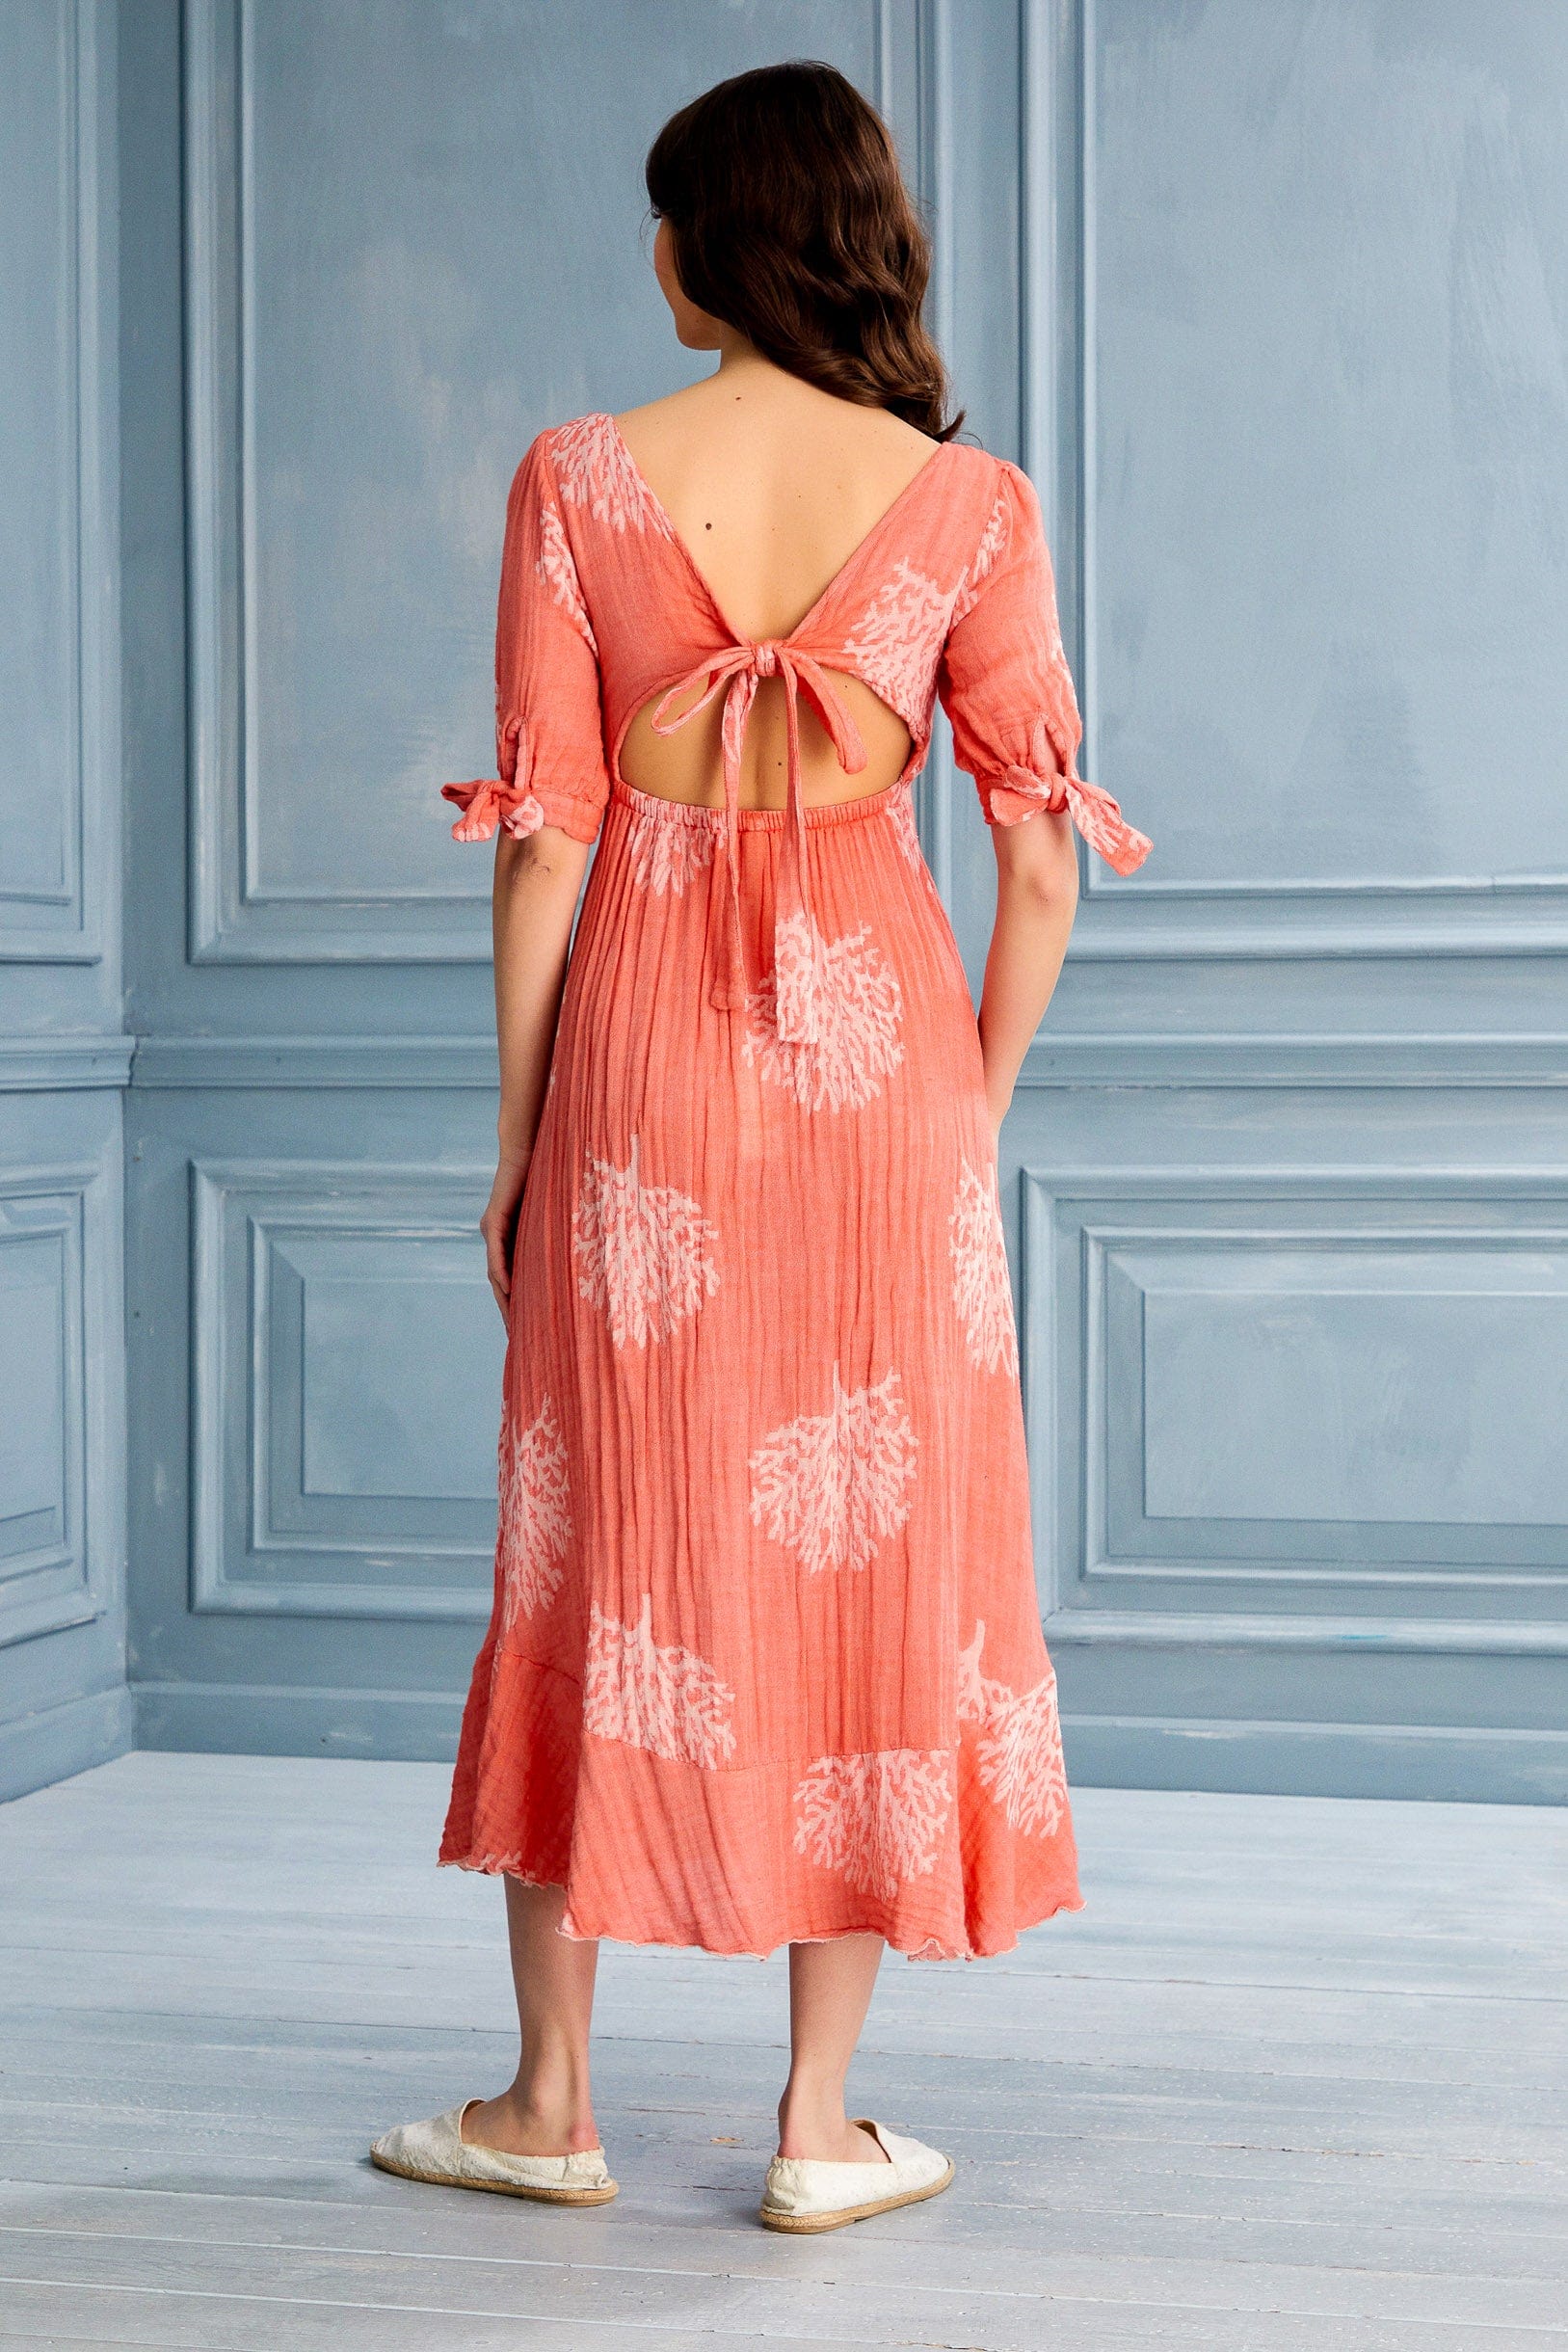 Begonville Elbise Melody Sırtı Açık Midi Elbise - Mercan